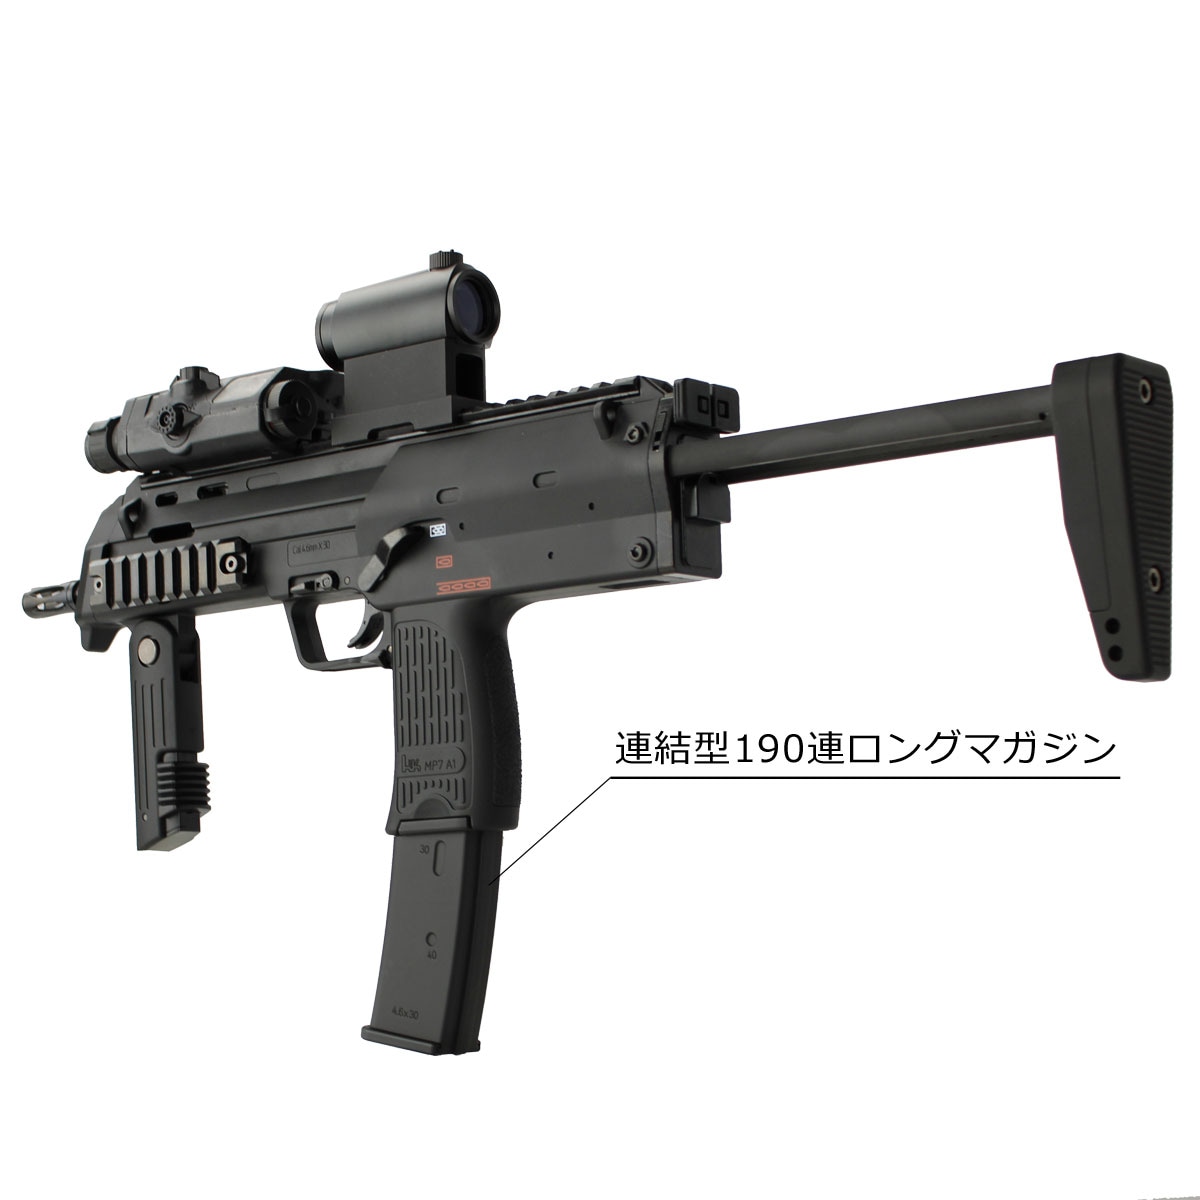 東京マルイ MP7A1ブラックモデル 190連マガジン付き 電動ガン箱説明書添付品は画像の通りです